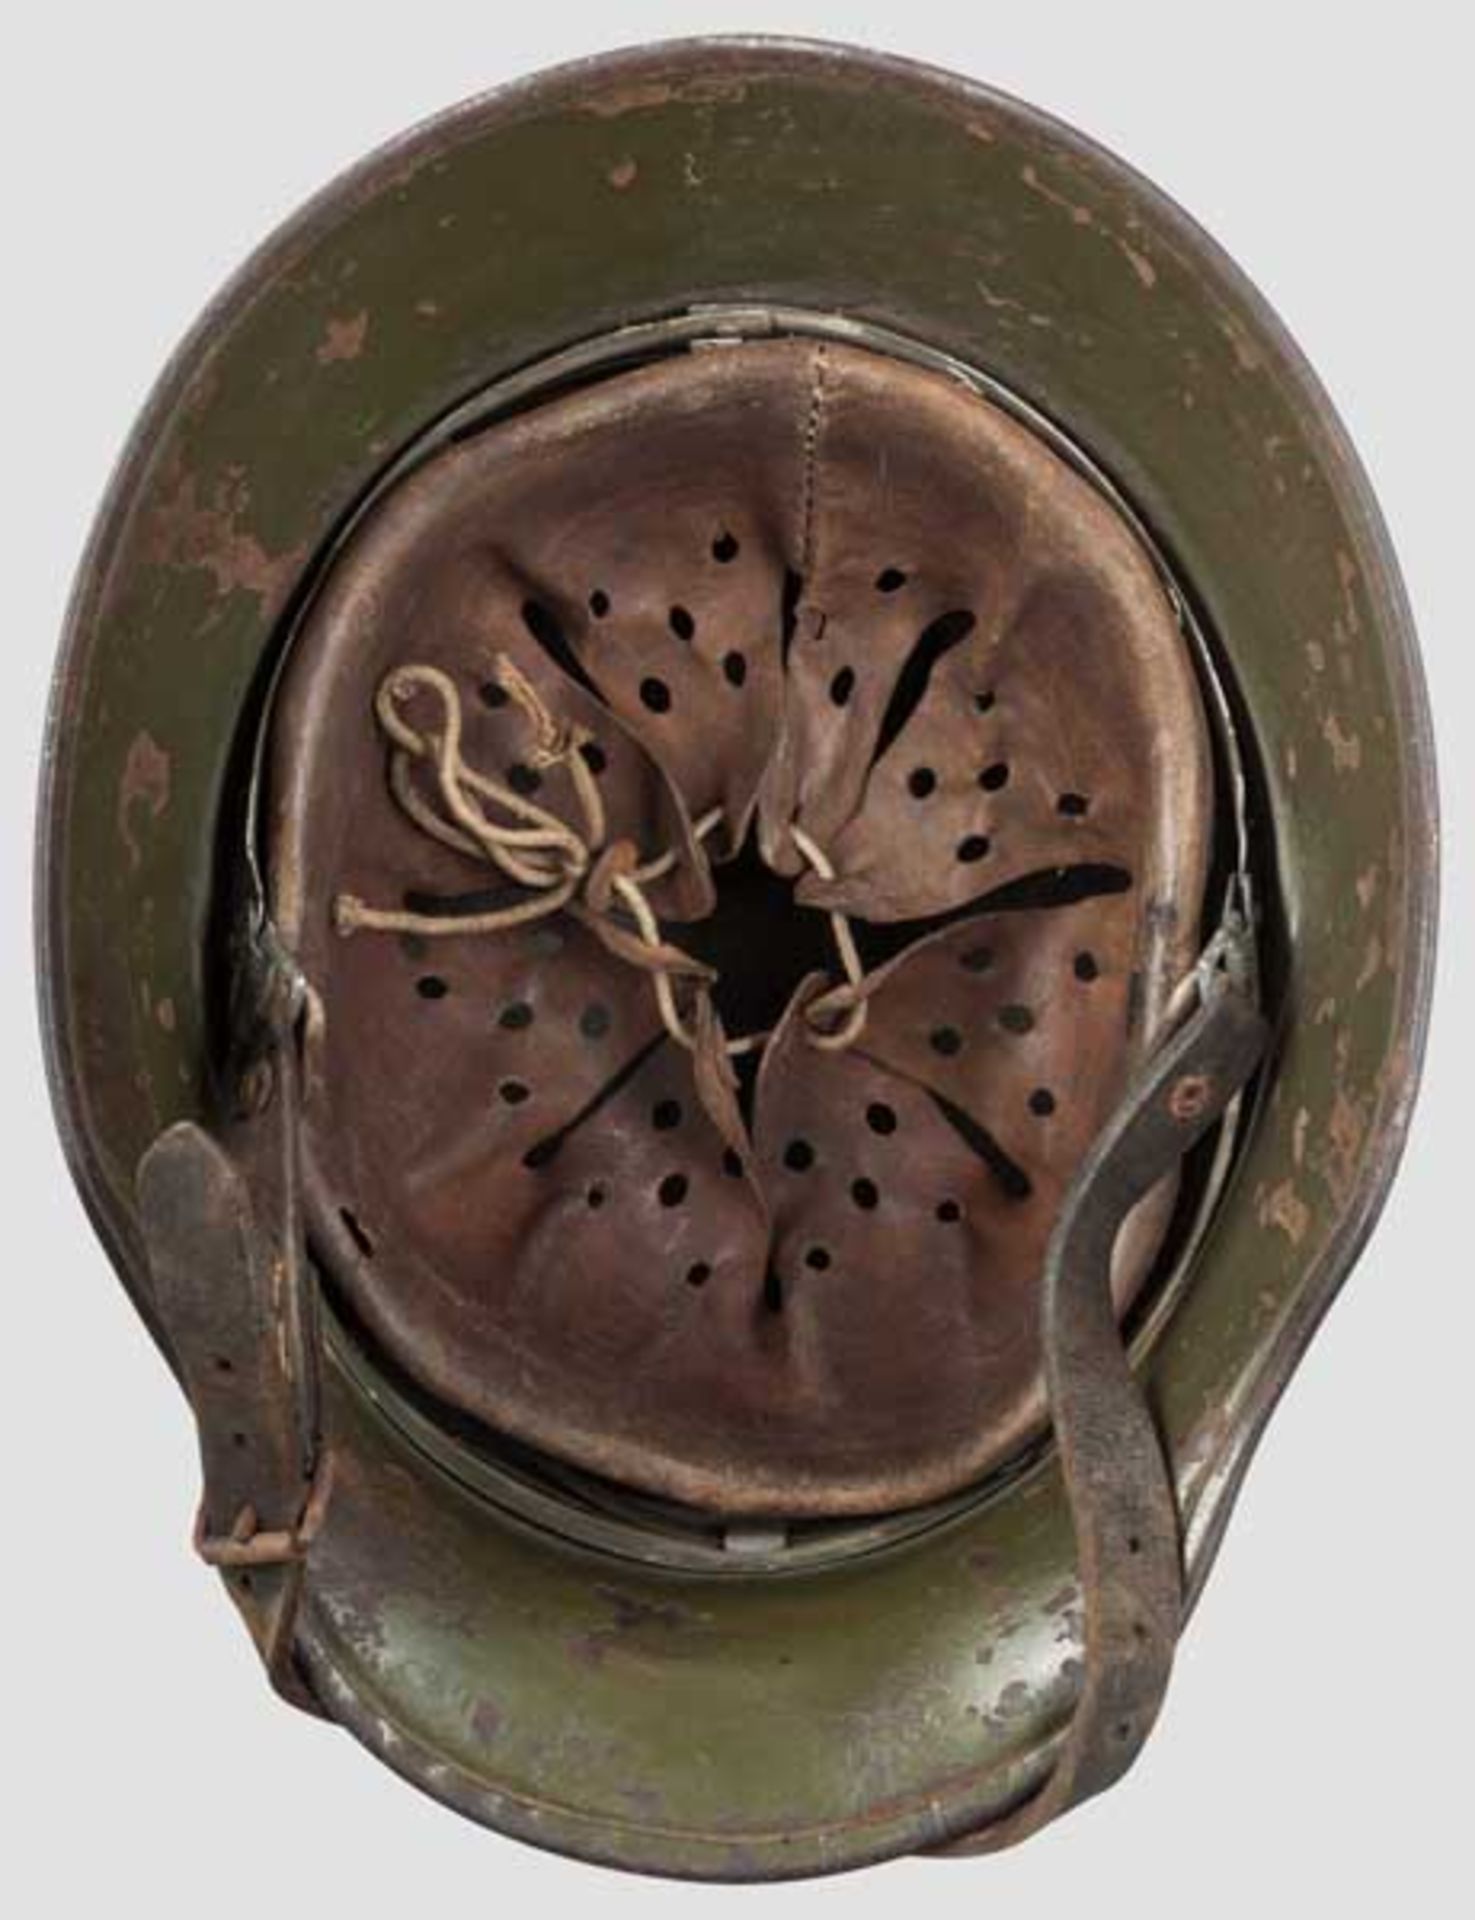 Helm M 18 mit Innenfutter M 31 Glocke mit grüner Lackierung, seitlich Schlagmarke "Si. 62". In - Bild 3 aus 4